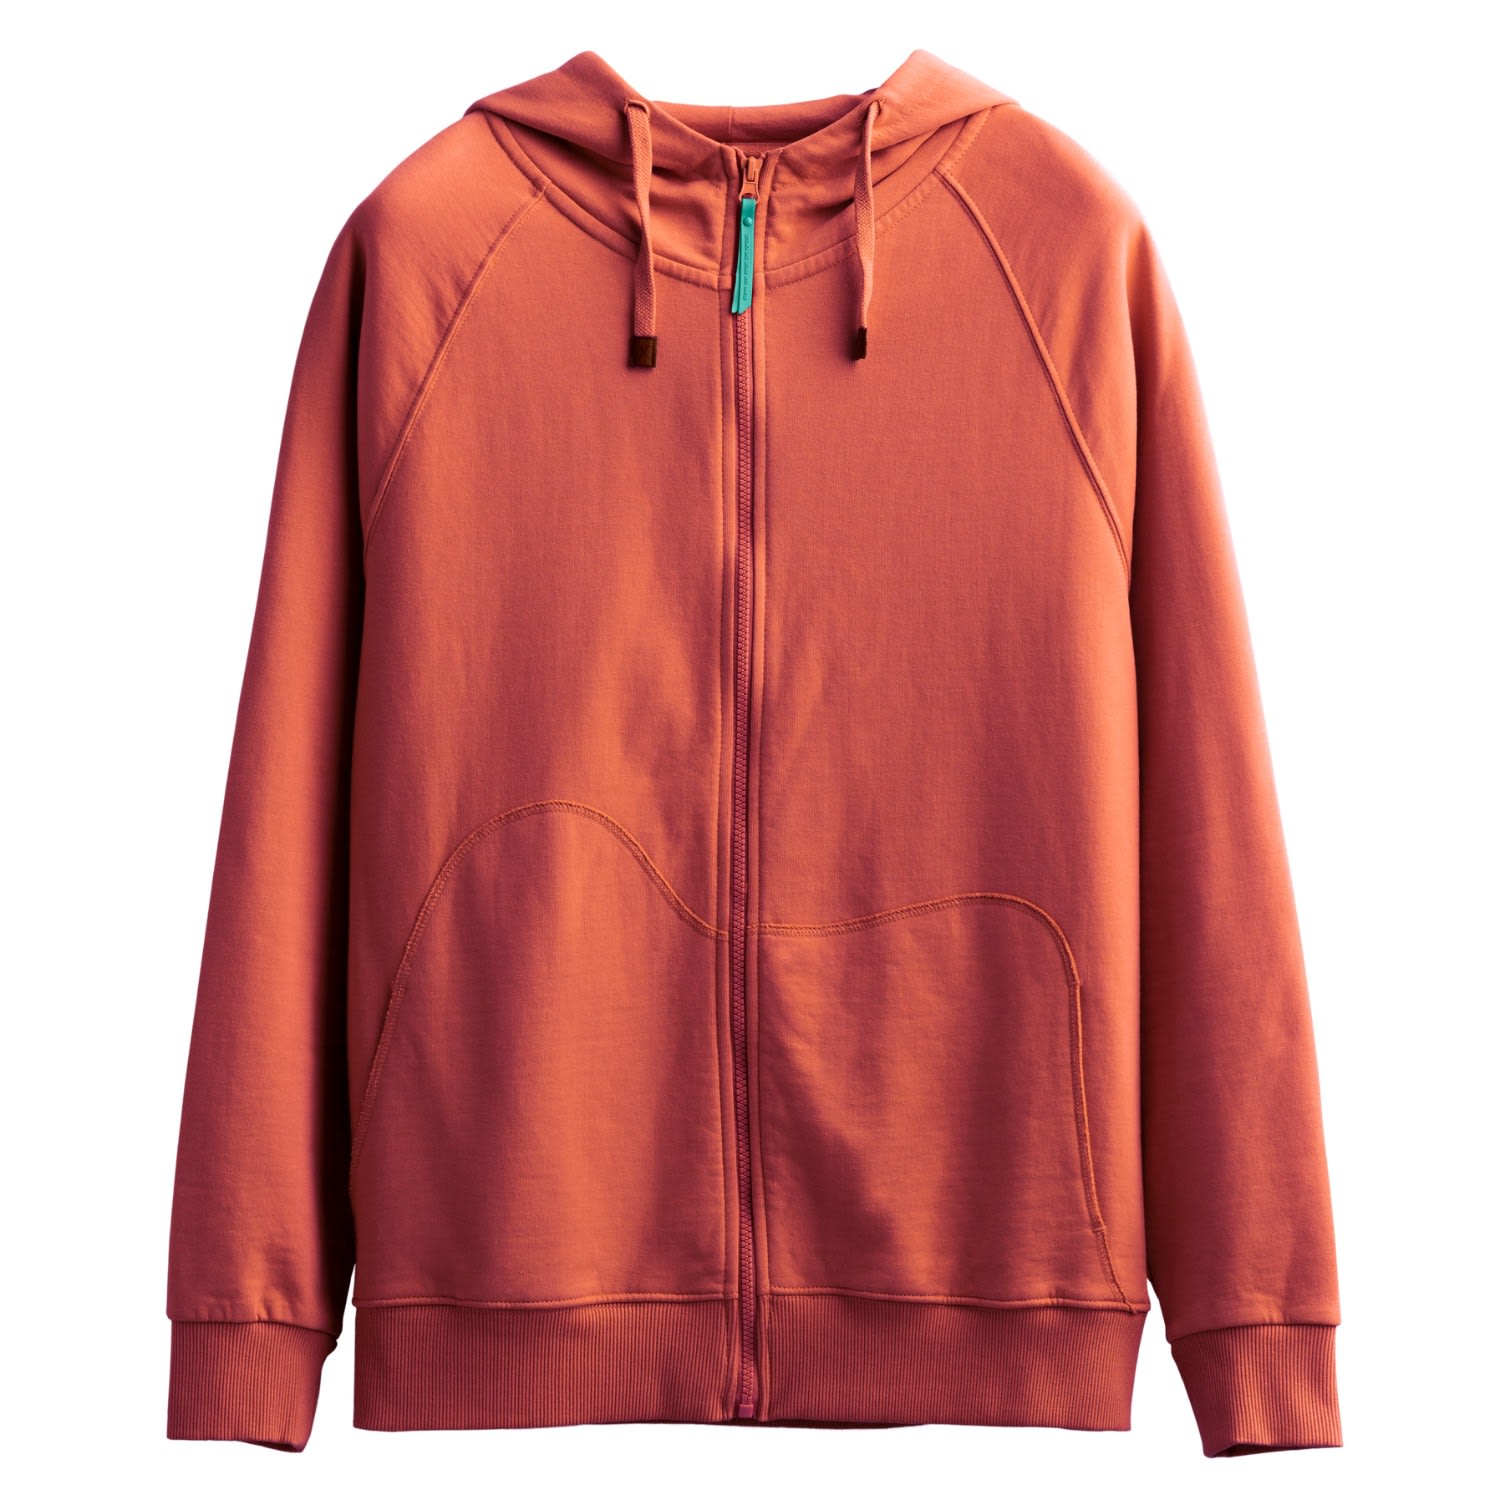 Men's Red Unisex Design Zip Hoodie Sweatshirt - Zipper - Coral Small KAFT